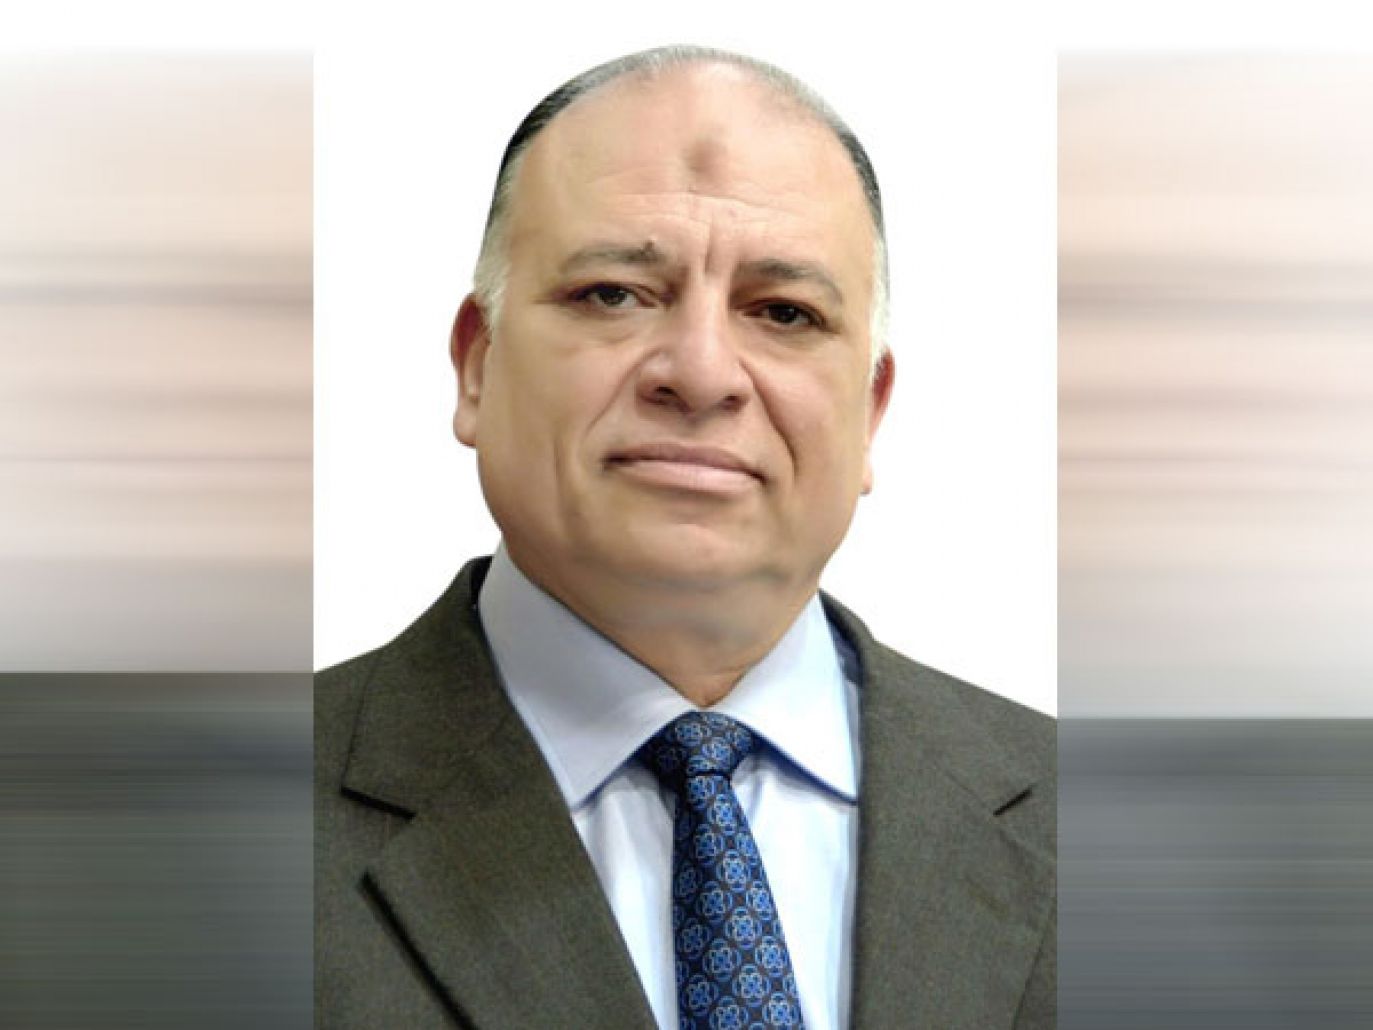 المهندس محمد سعيد محروس يهنىٔ المصريين وقطاع الطيران بمناسبة عيد تحرير سيناء

